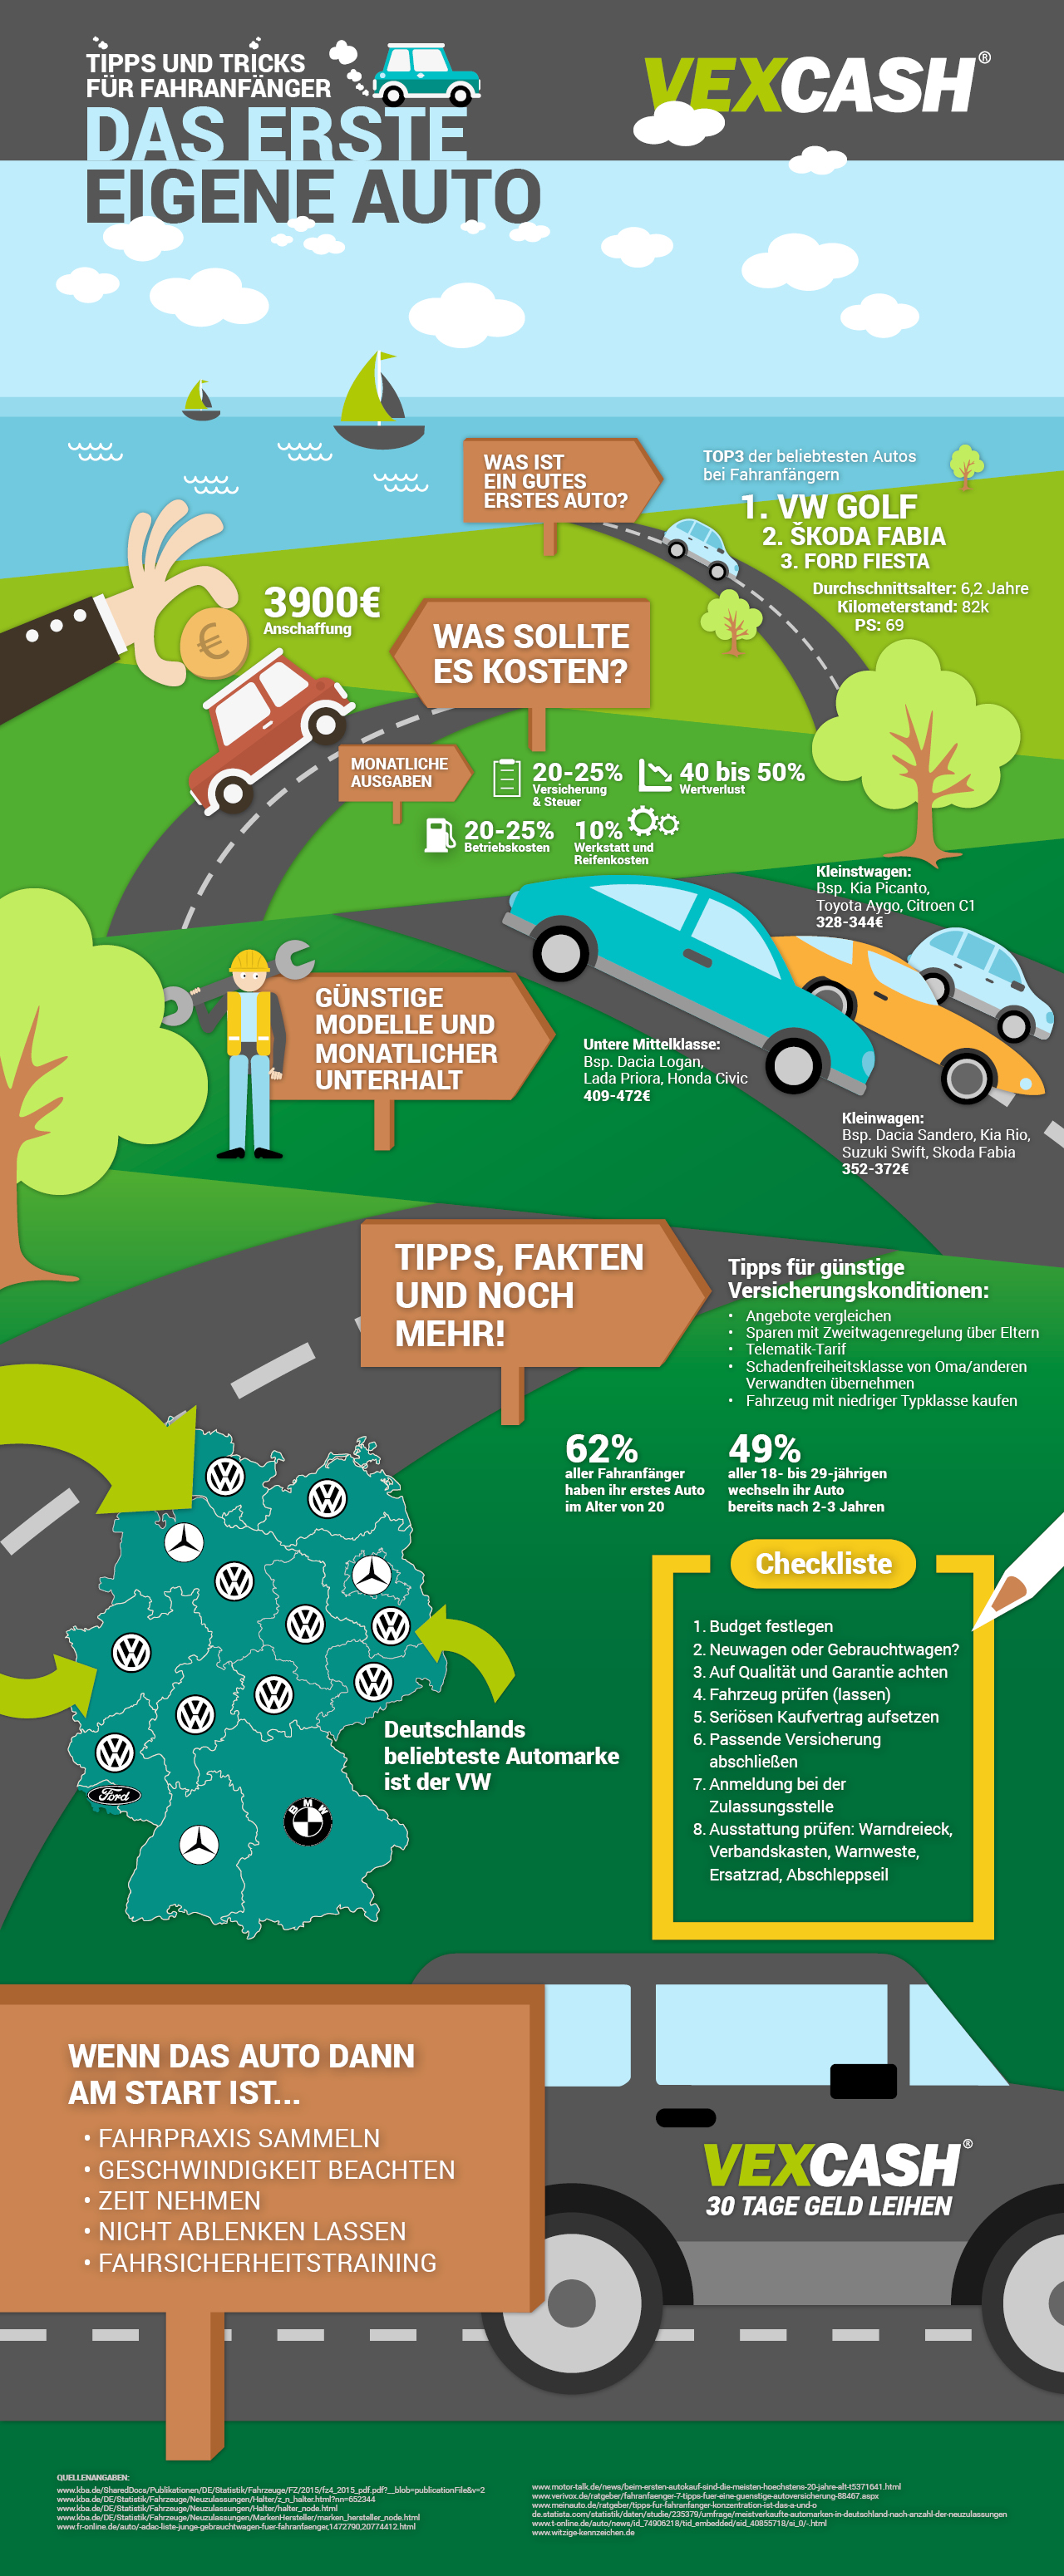 Infografik_VEXCASH_Tipps rund um das erste eigene Auto